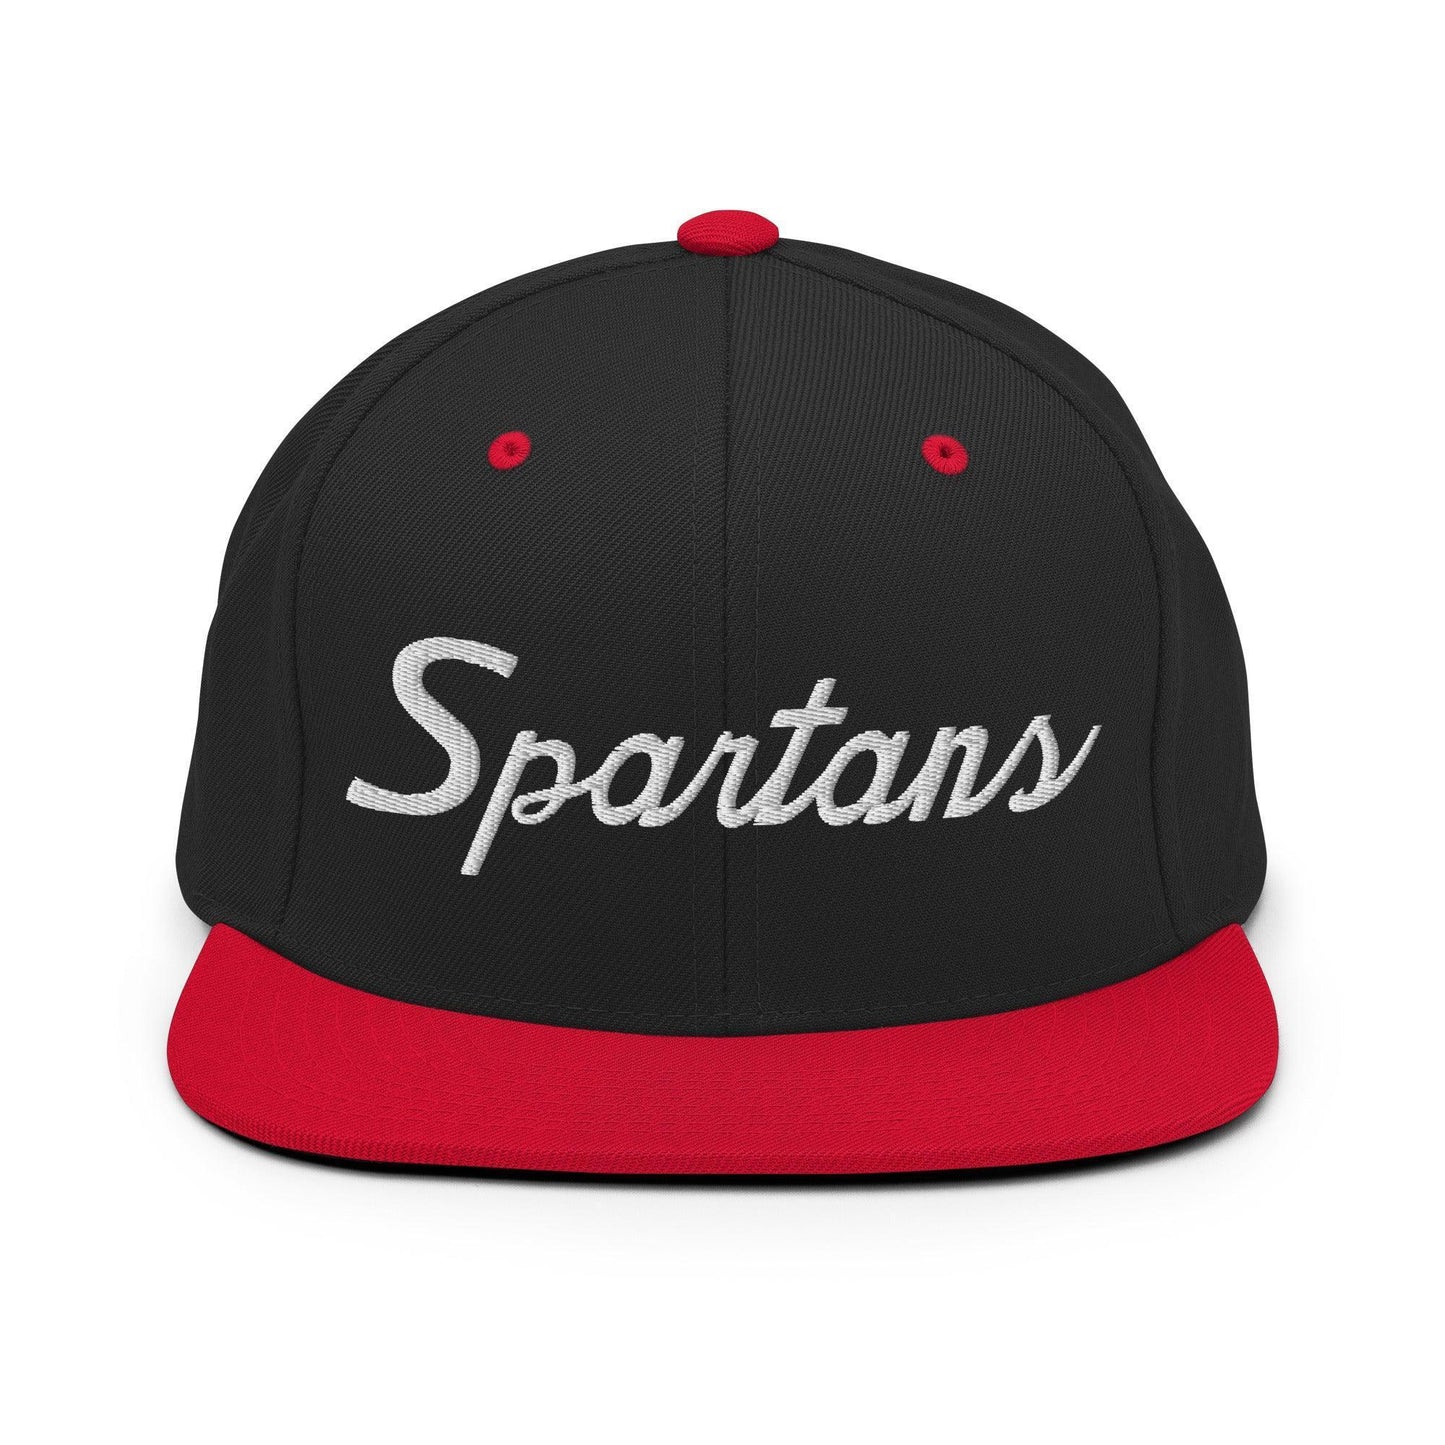 Spartans School Mascot Script Snapback Hat Black Red